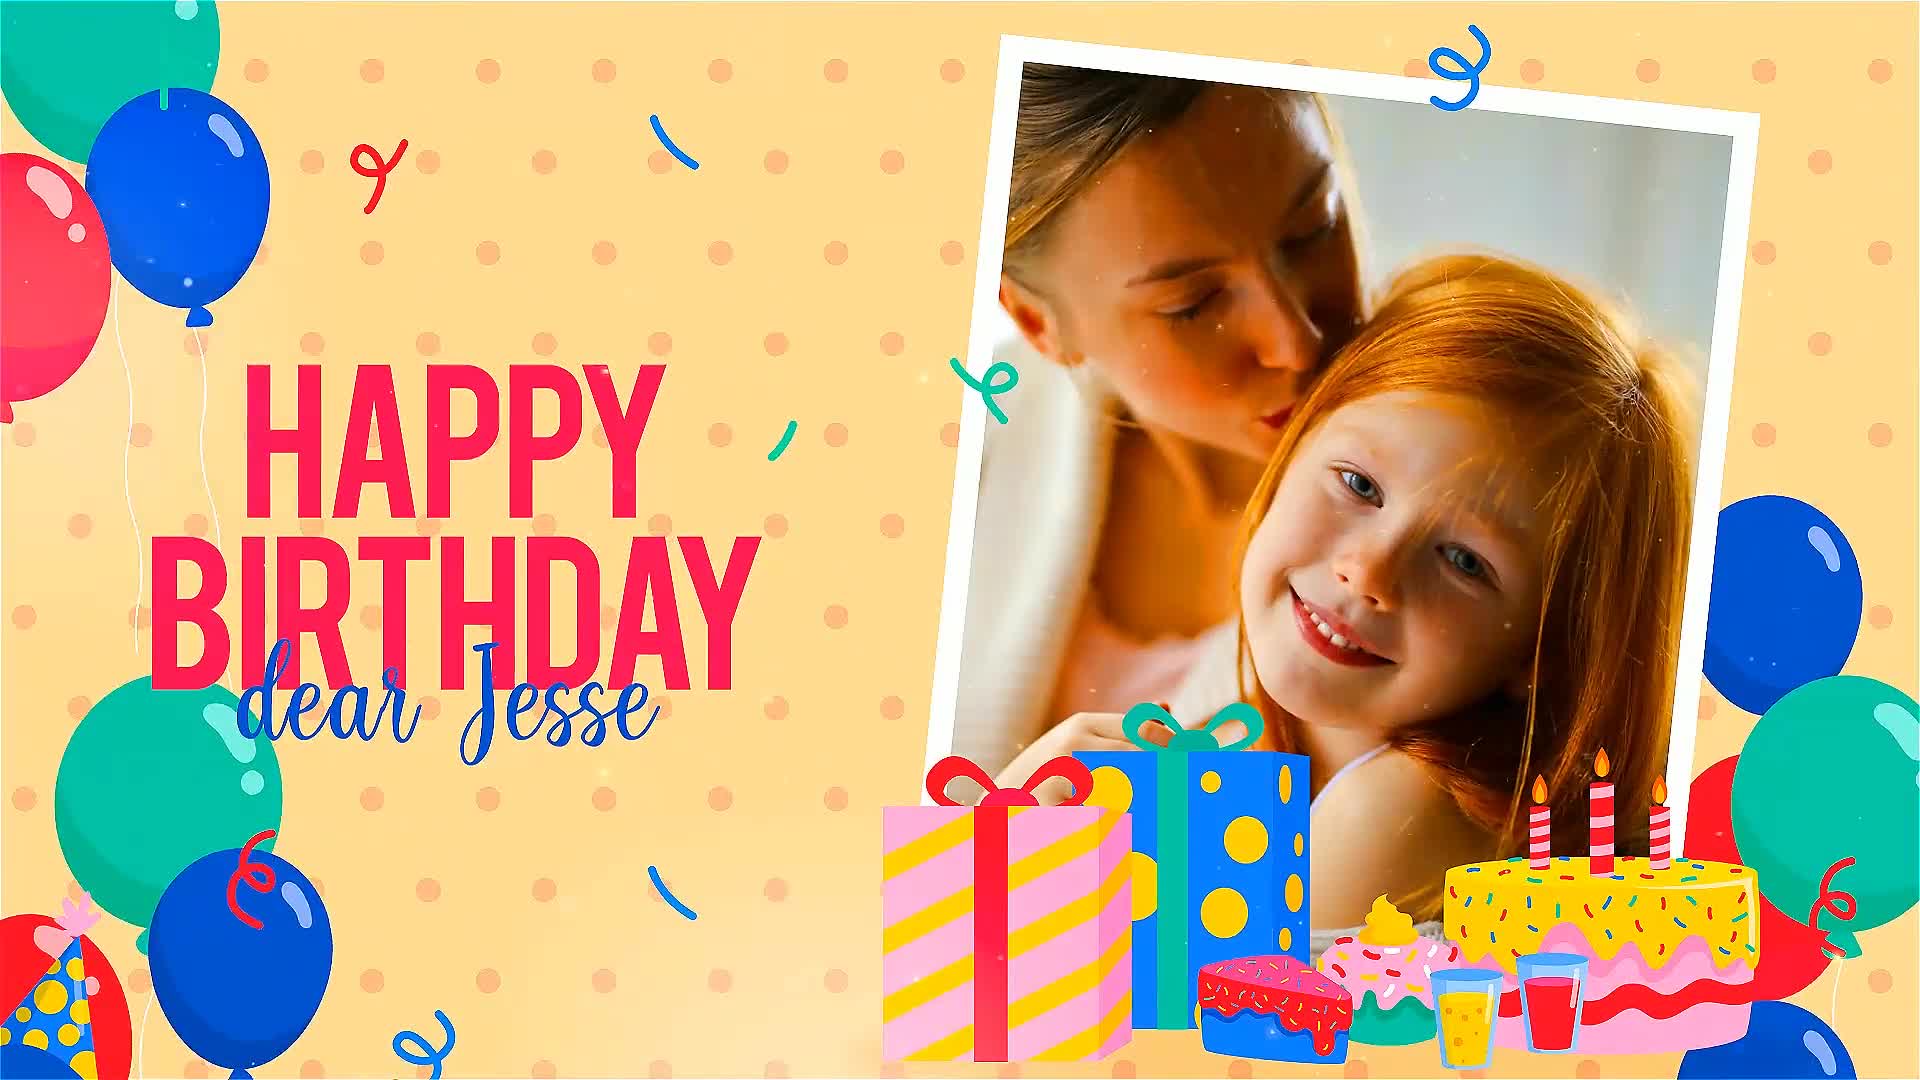  Happy Birthday Dear Jesse 